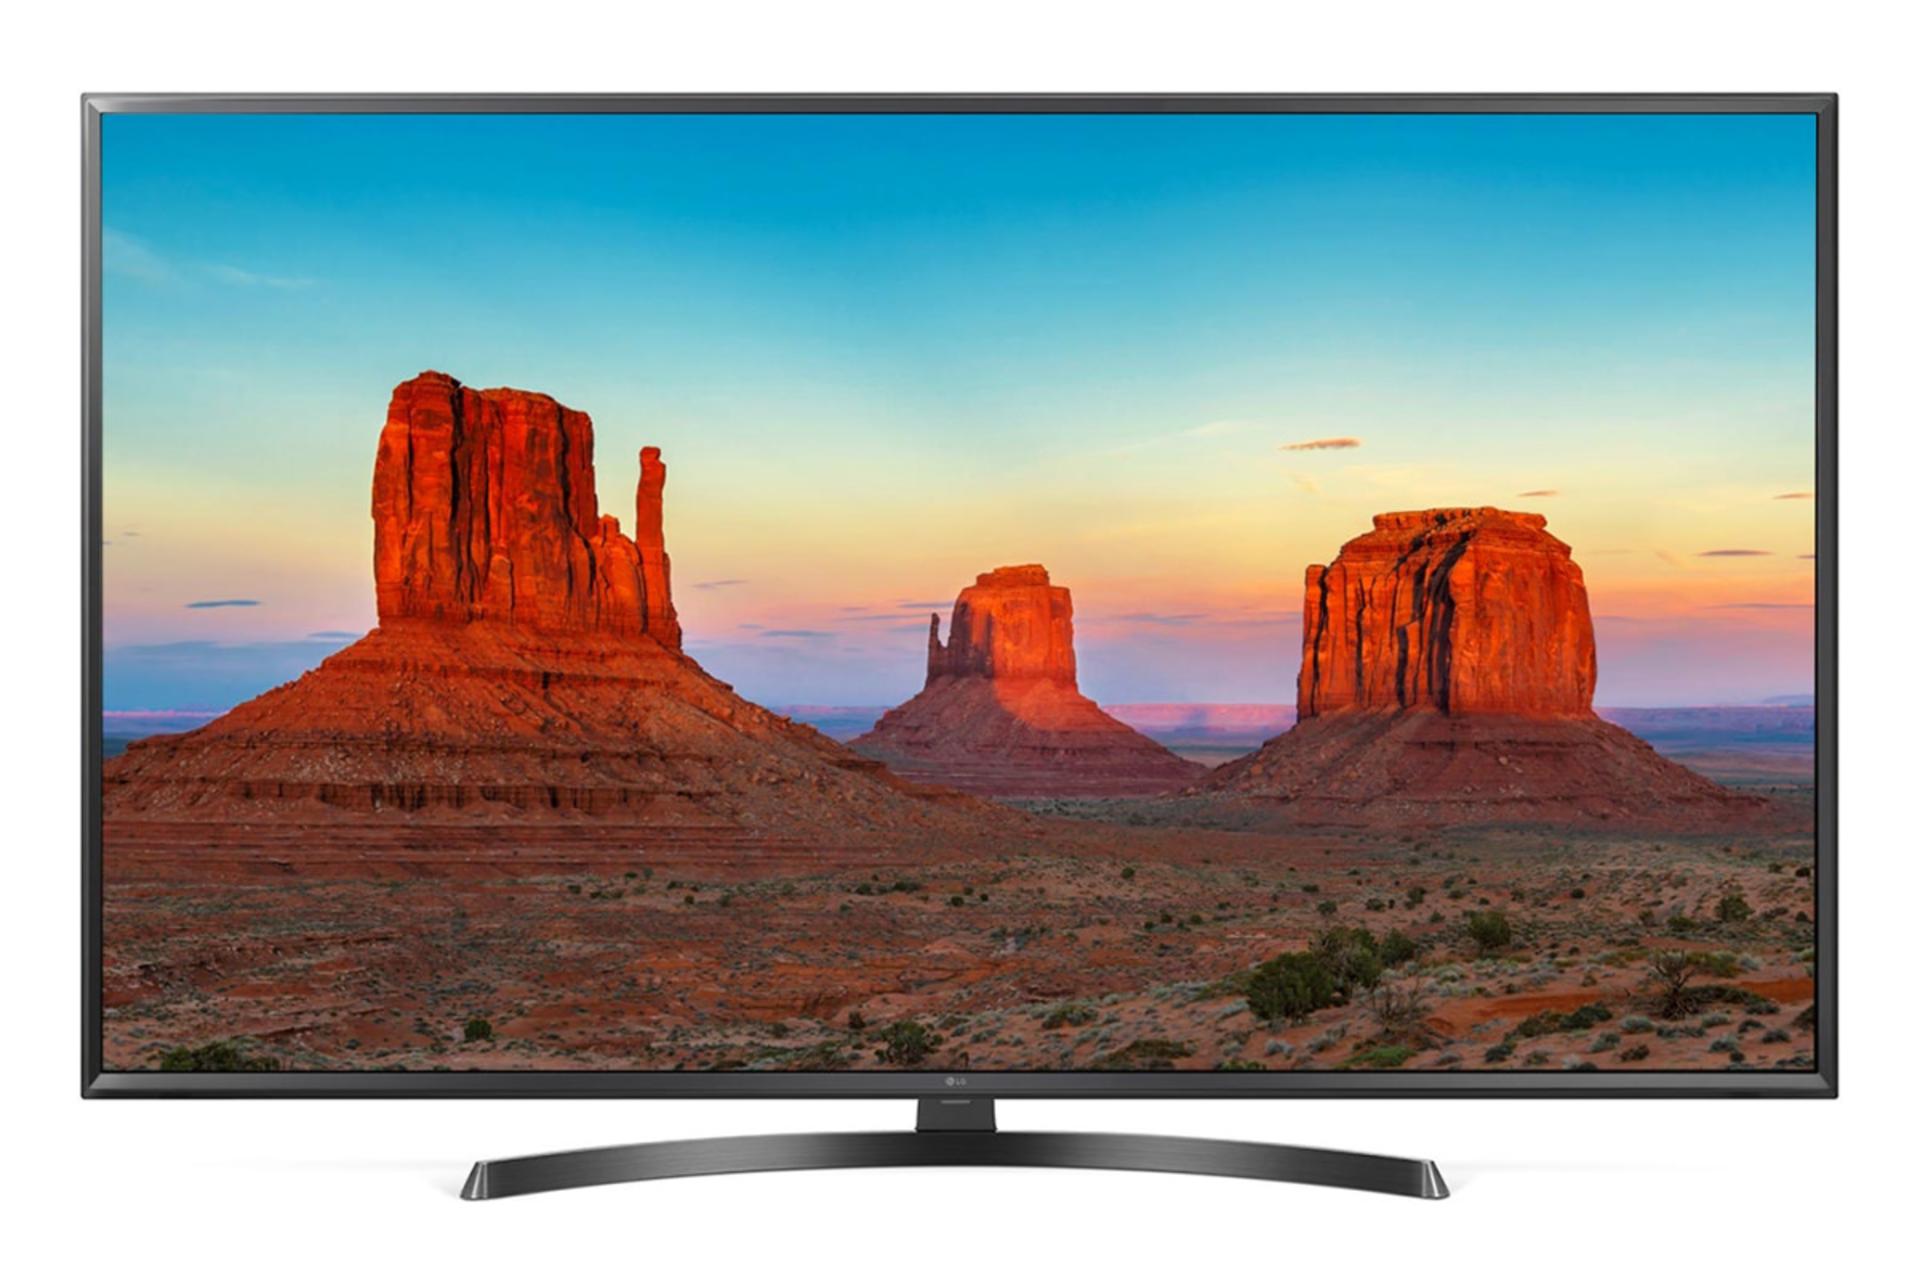 نمای جلو تلویزیون ال جی UK6600 مدل 43 اینچ با صفحه خاموش رنگ مشکی